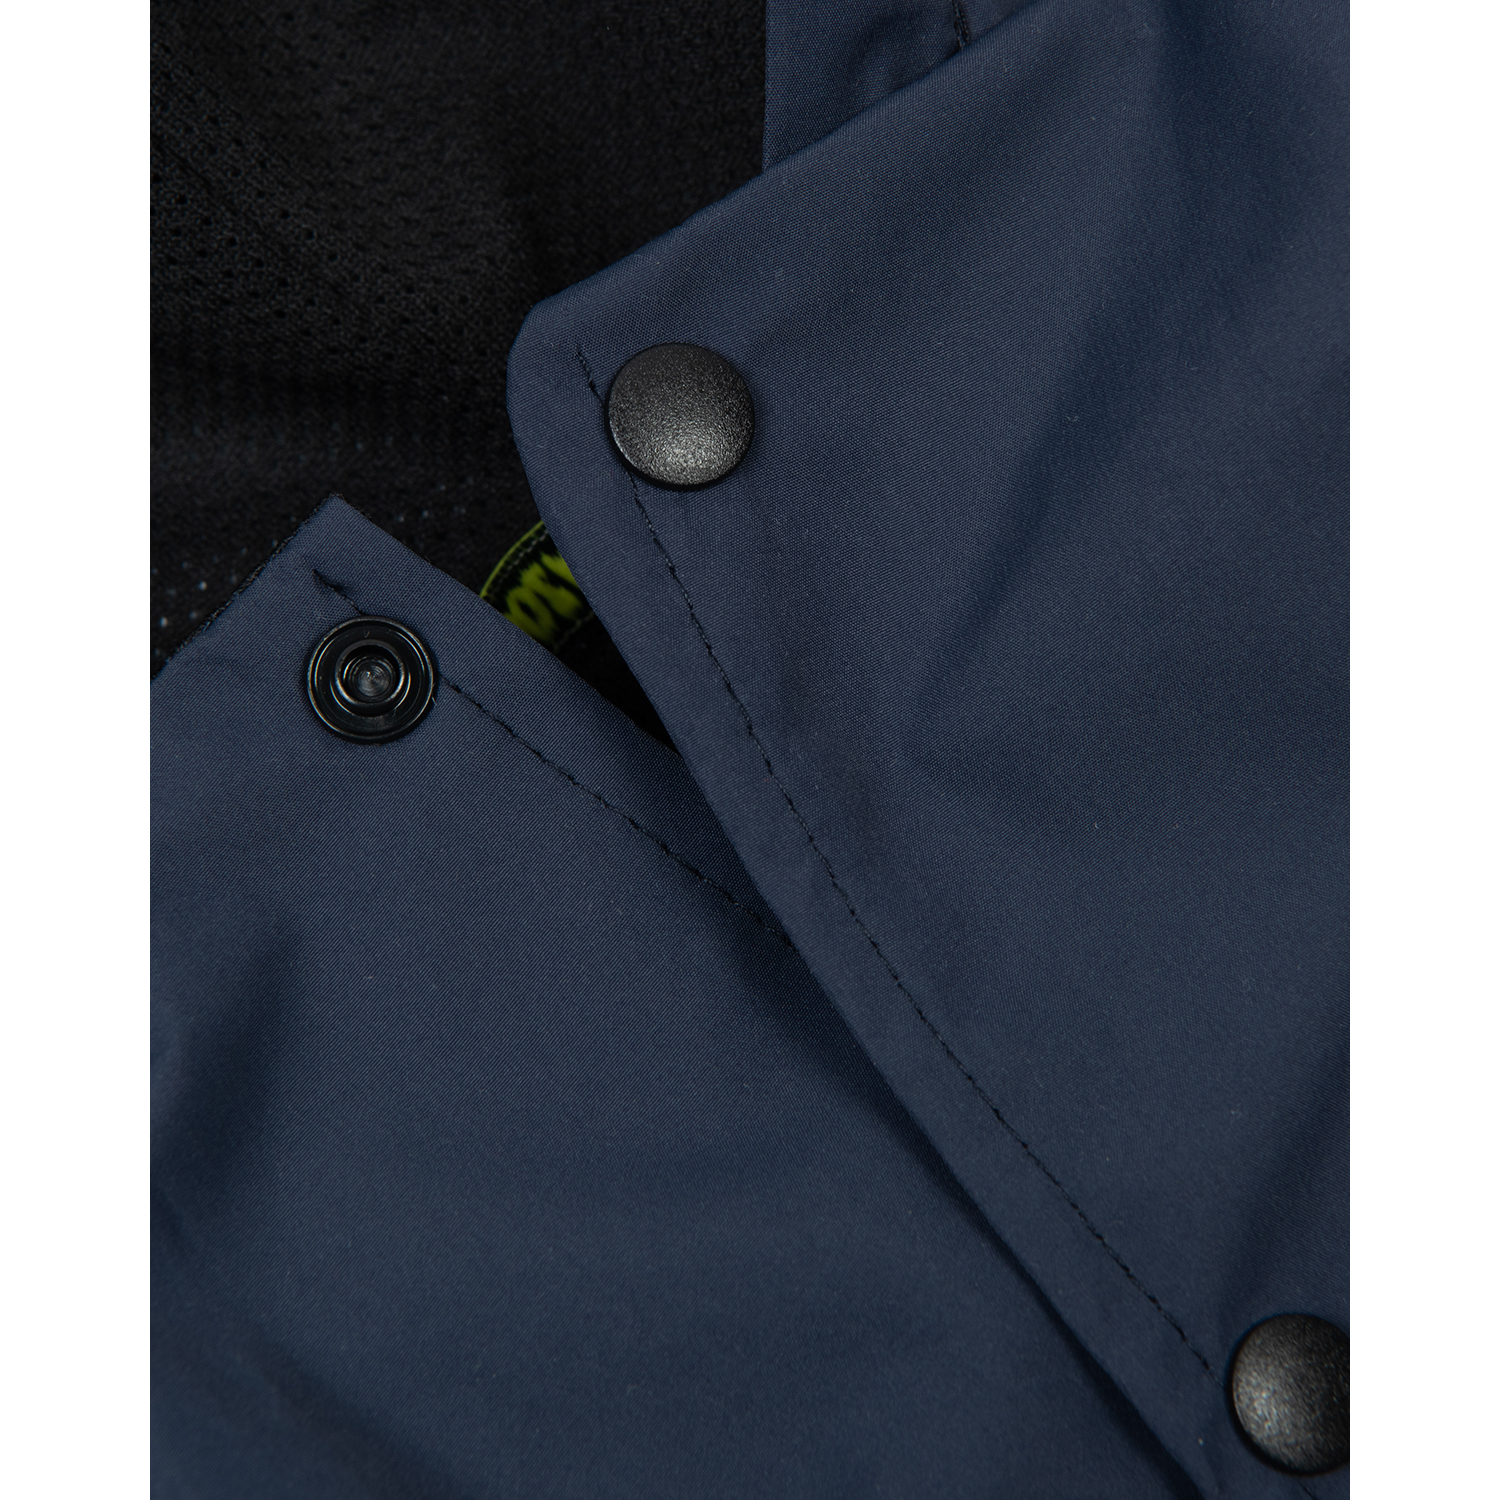 Куртка-дождевик для собак Зоозавр тёмно-синяя 65 - фото 4